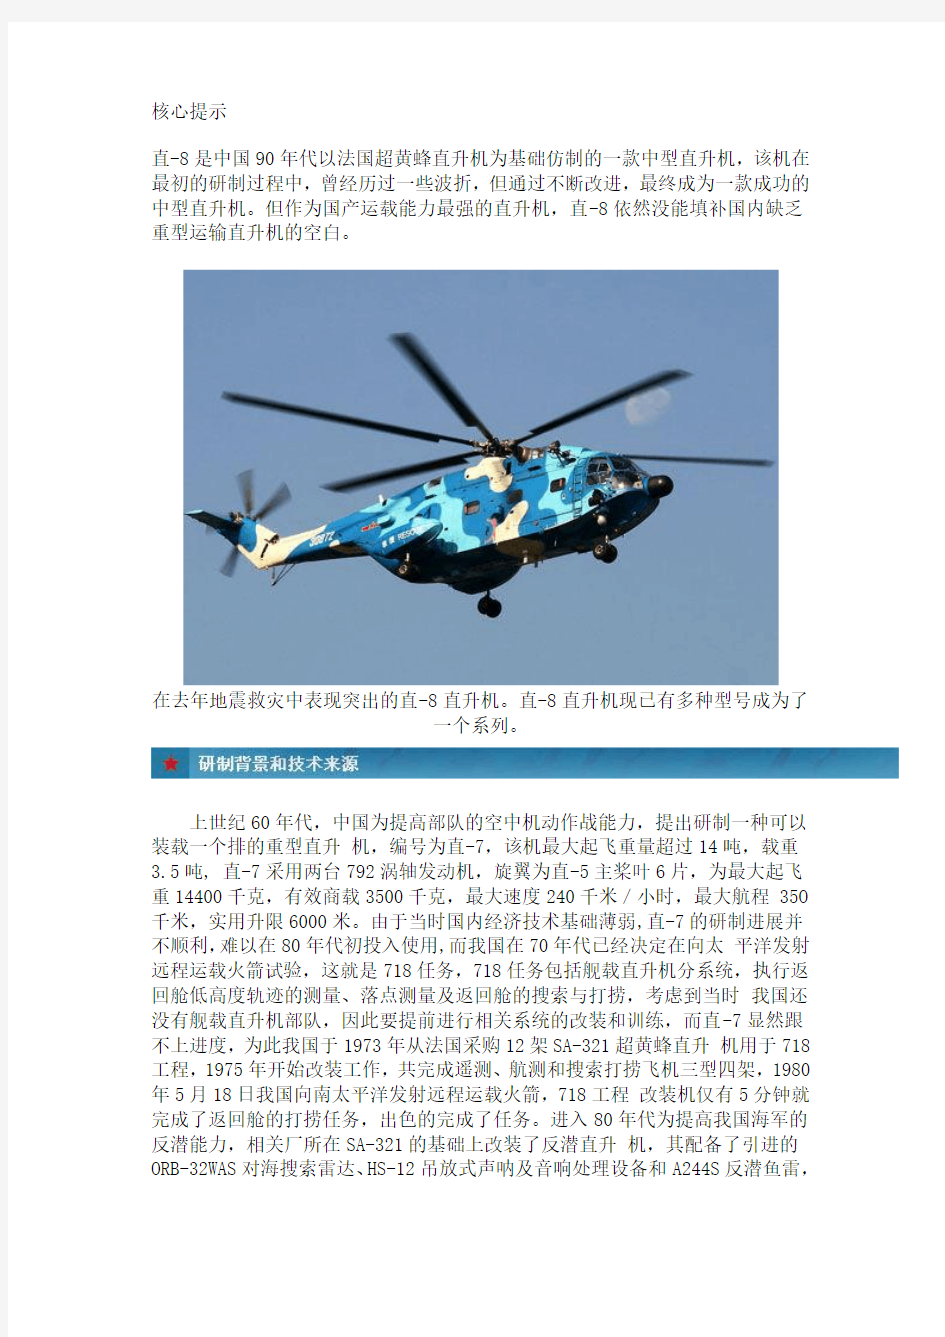 直-8直升机